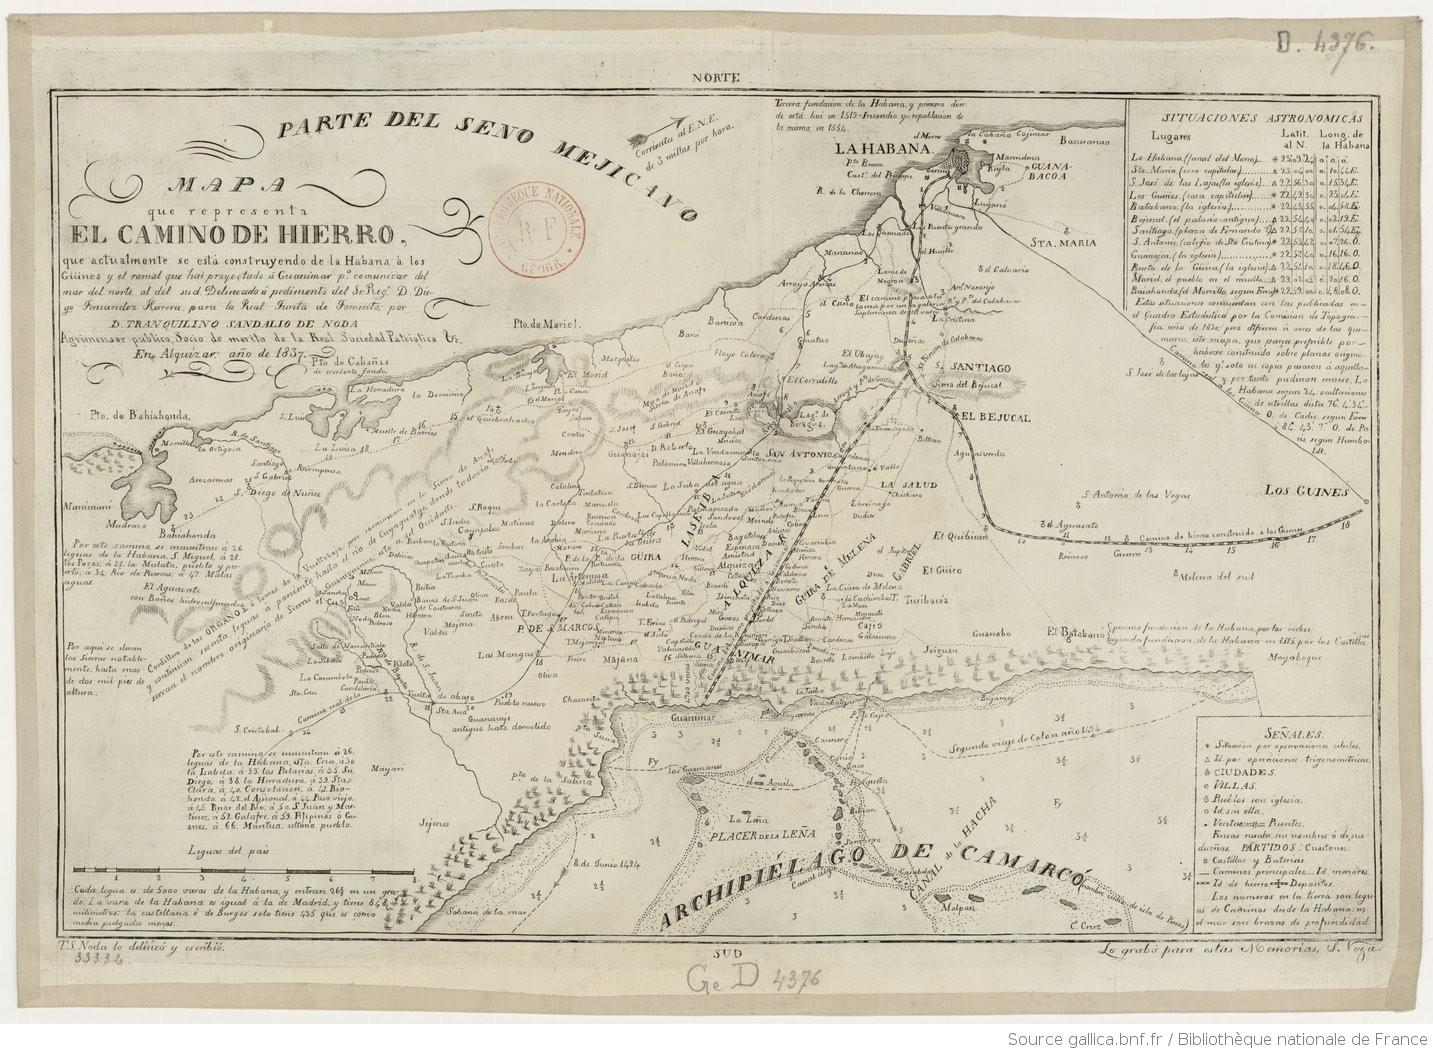 Mapa con el trazado de “El Camino de Hierro”. https://gallica.bnf.fr